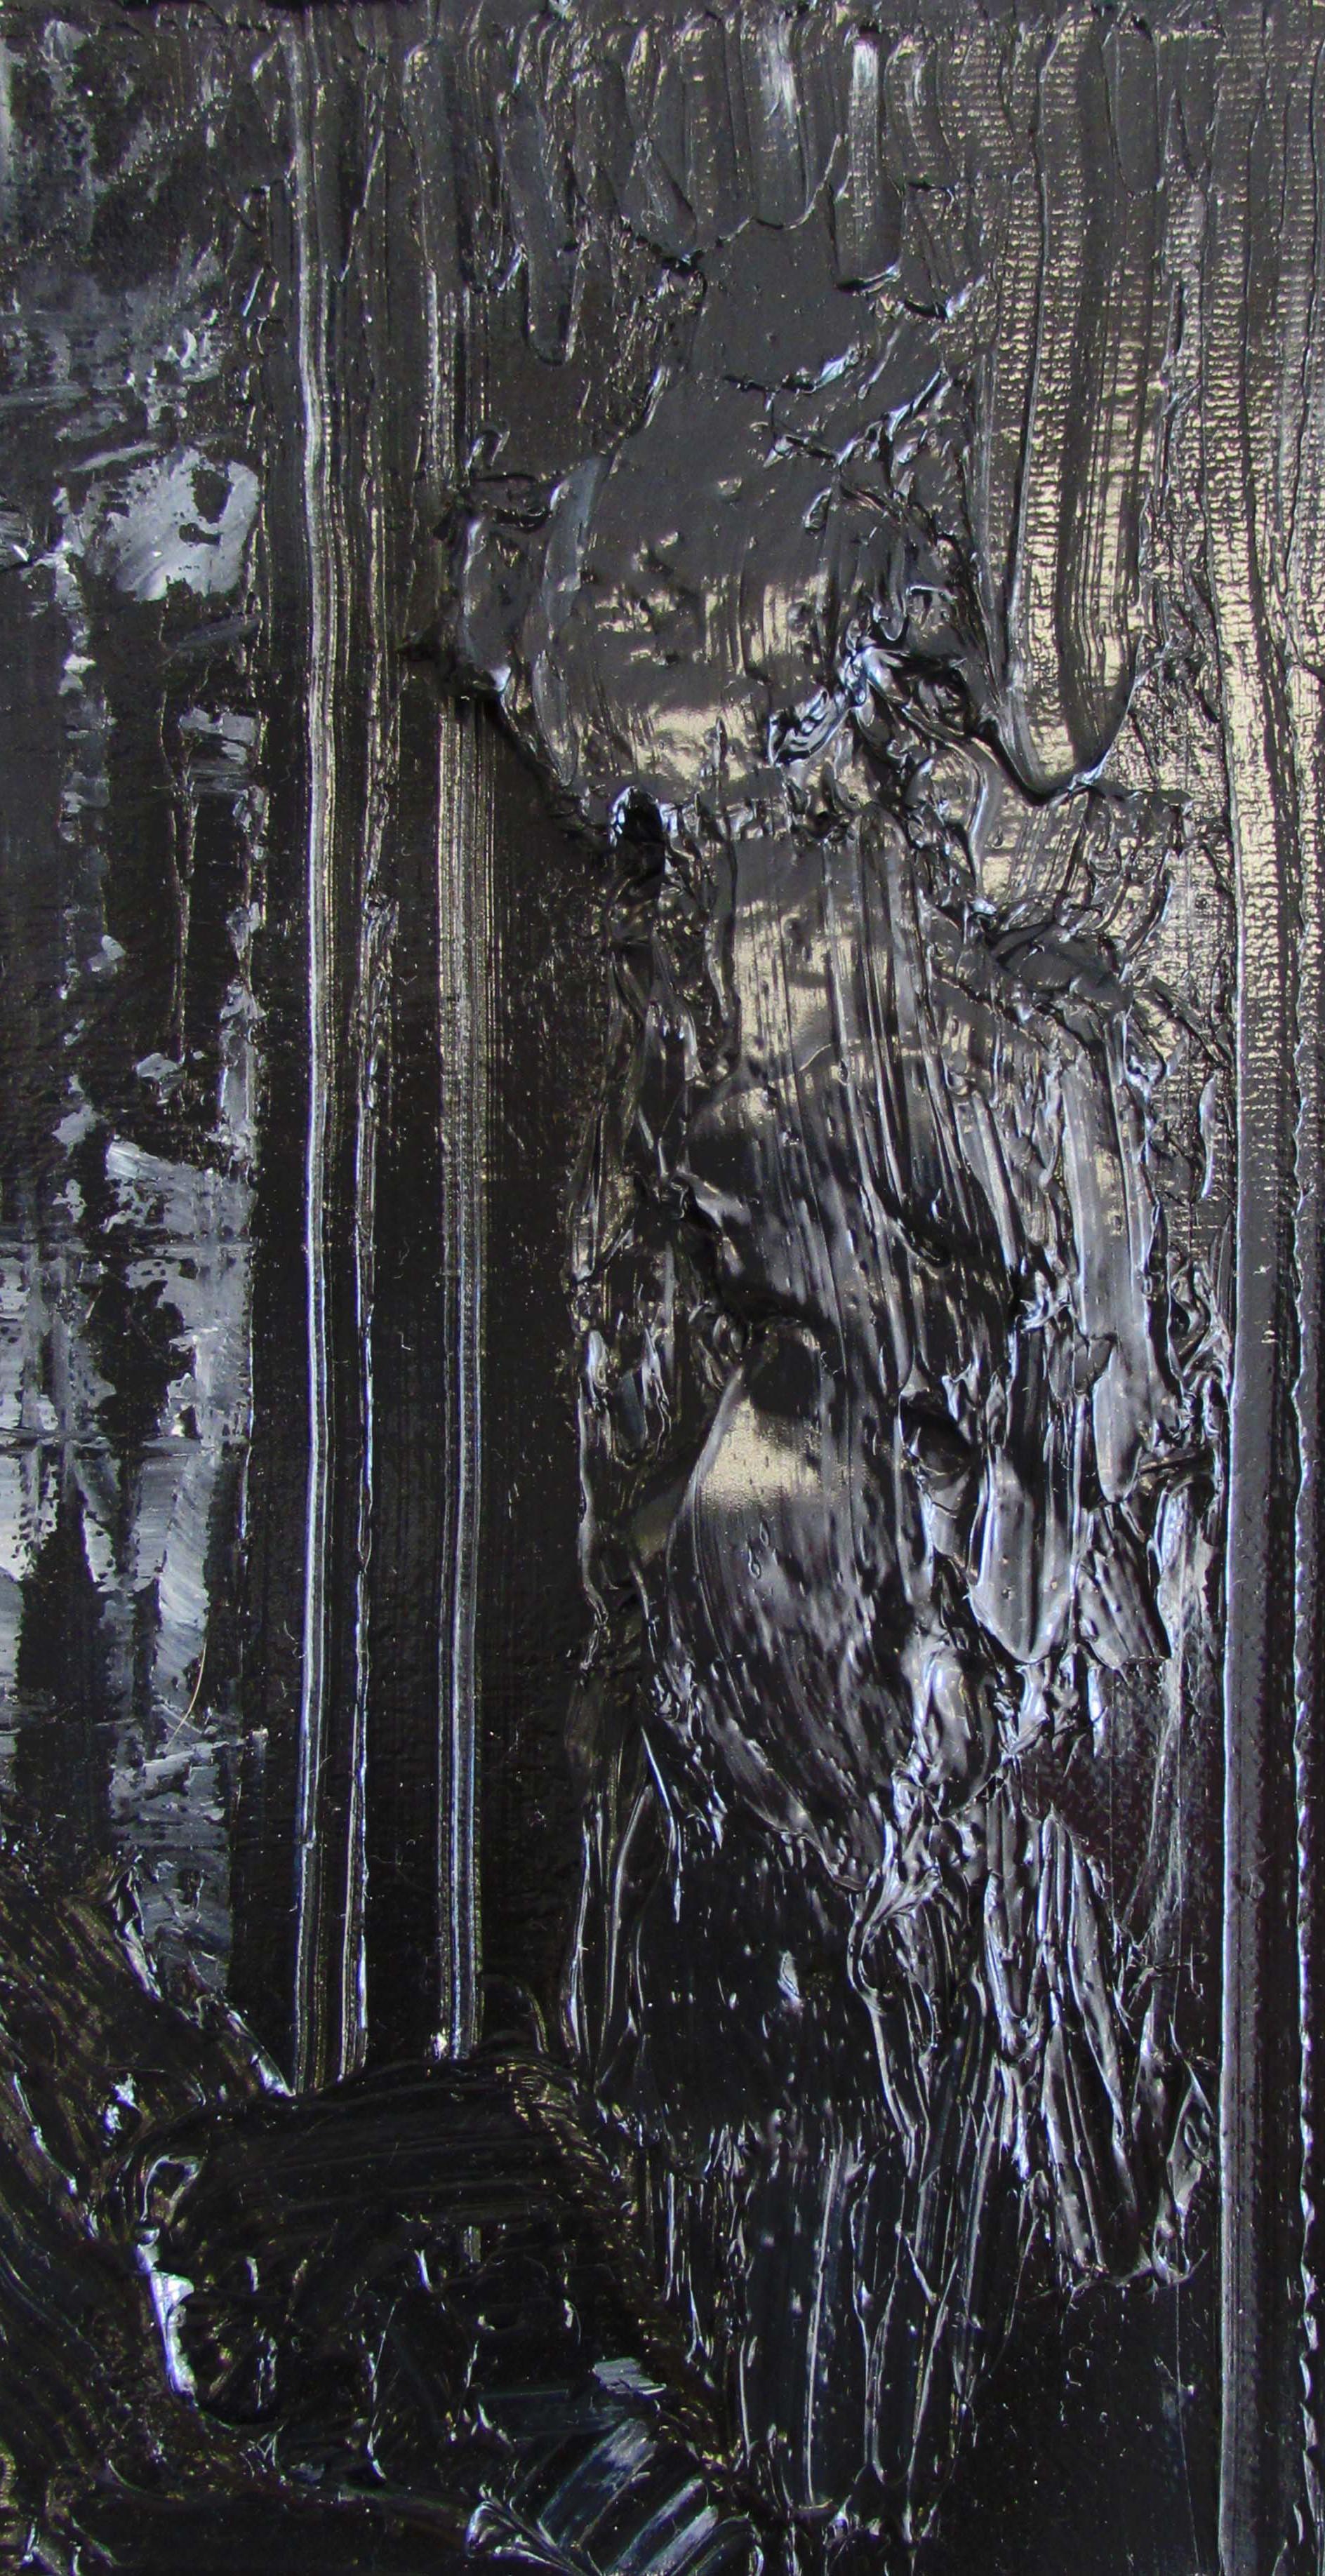 Sans titre 03 [Dissecting the Inknown 03] - Contemporain, Noir, Monochrome - Painting de Zsolt Berszán